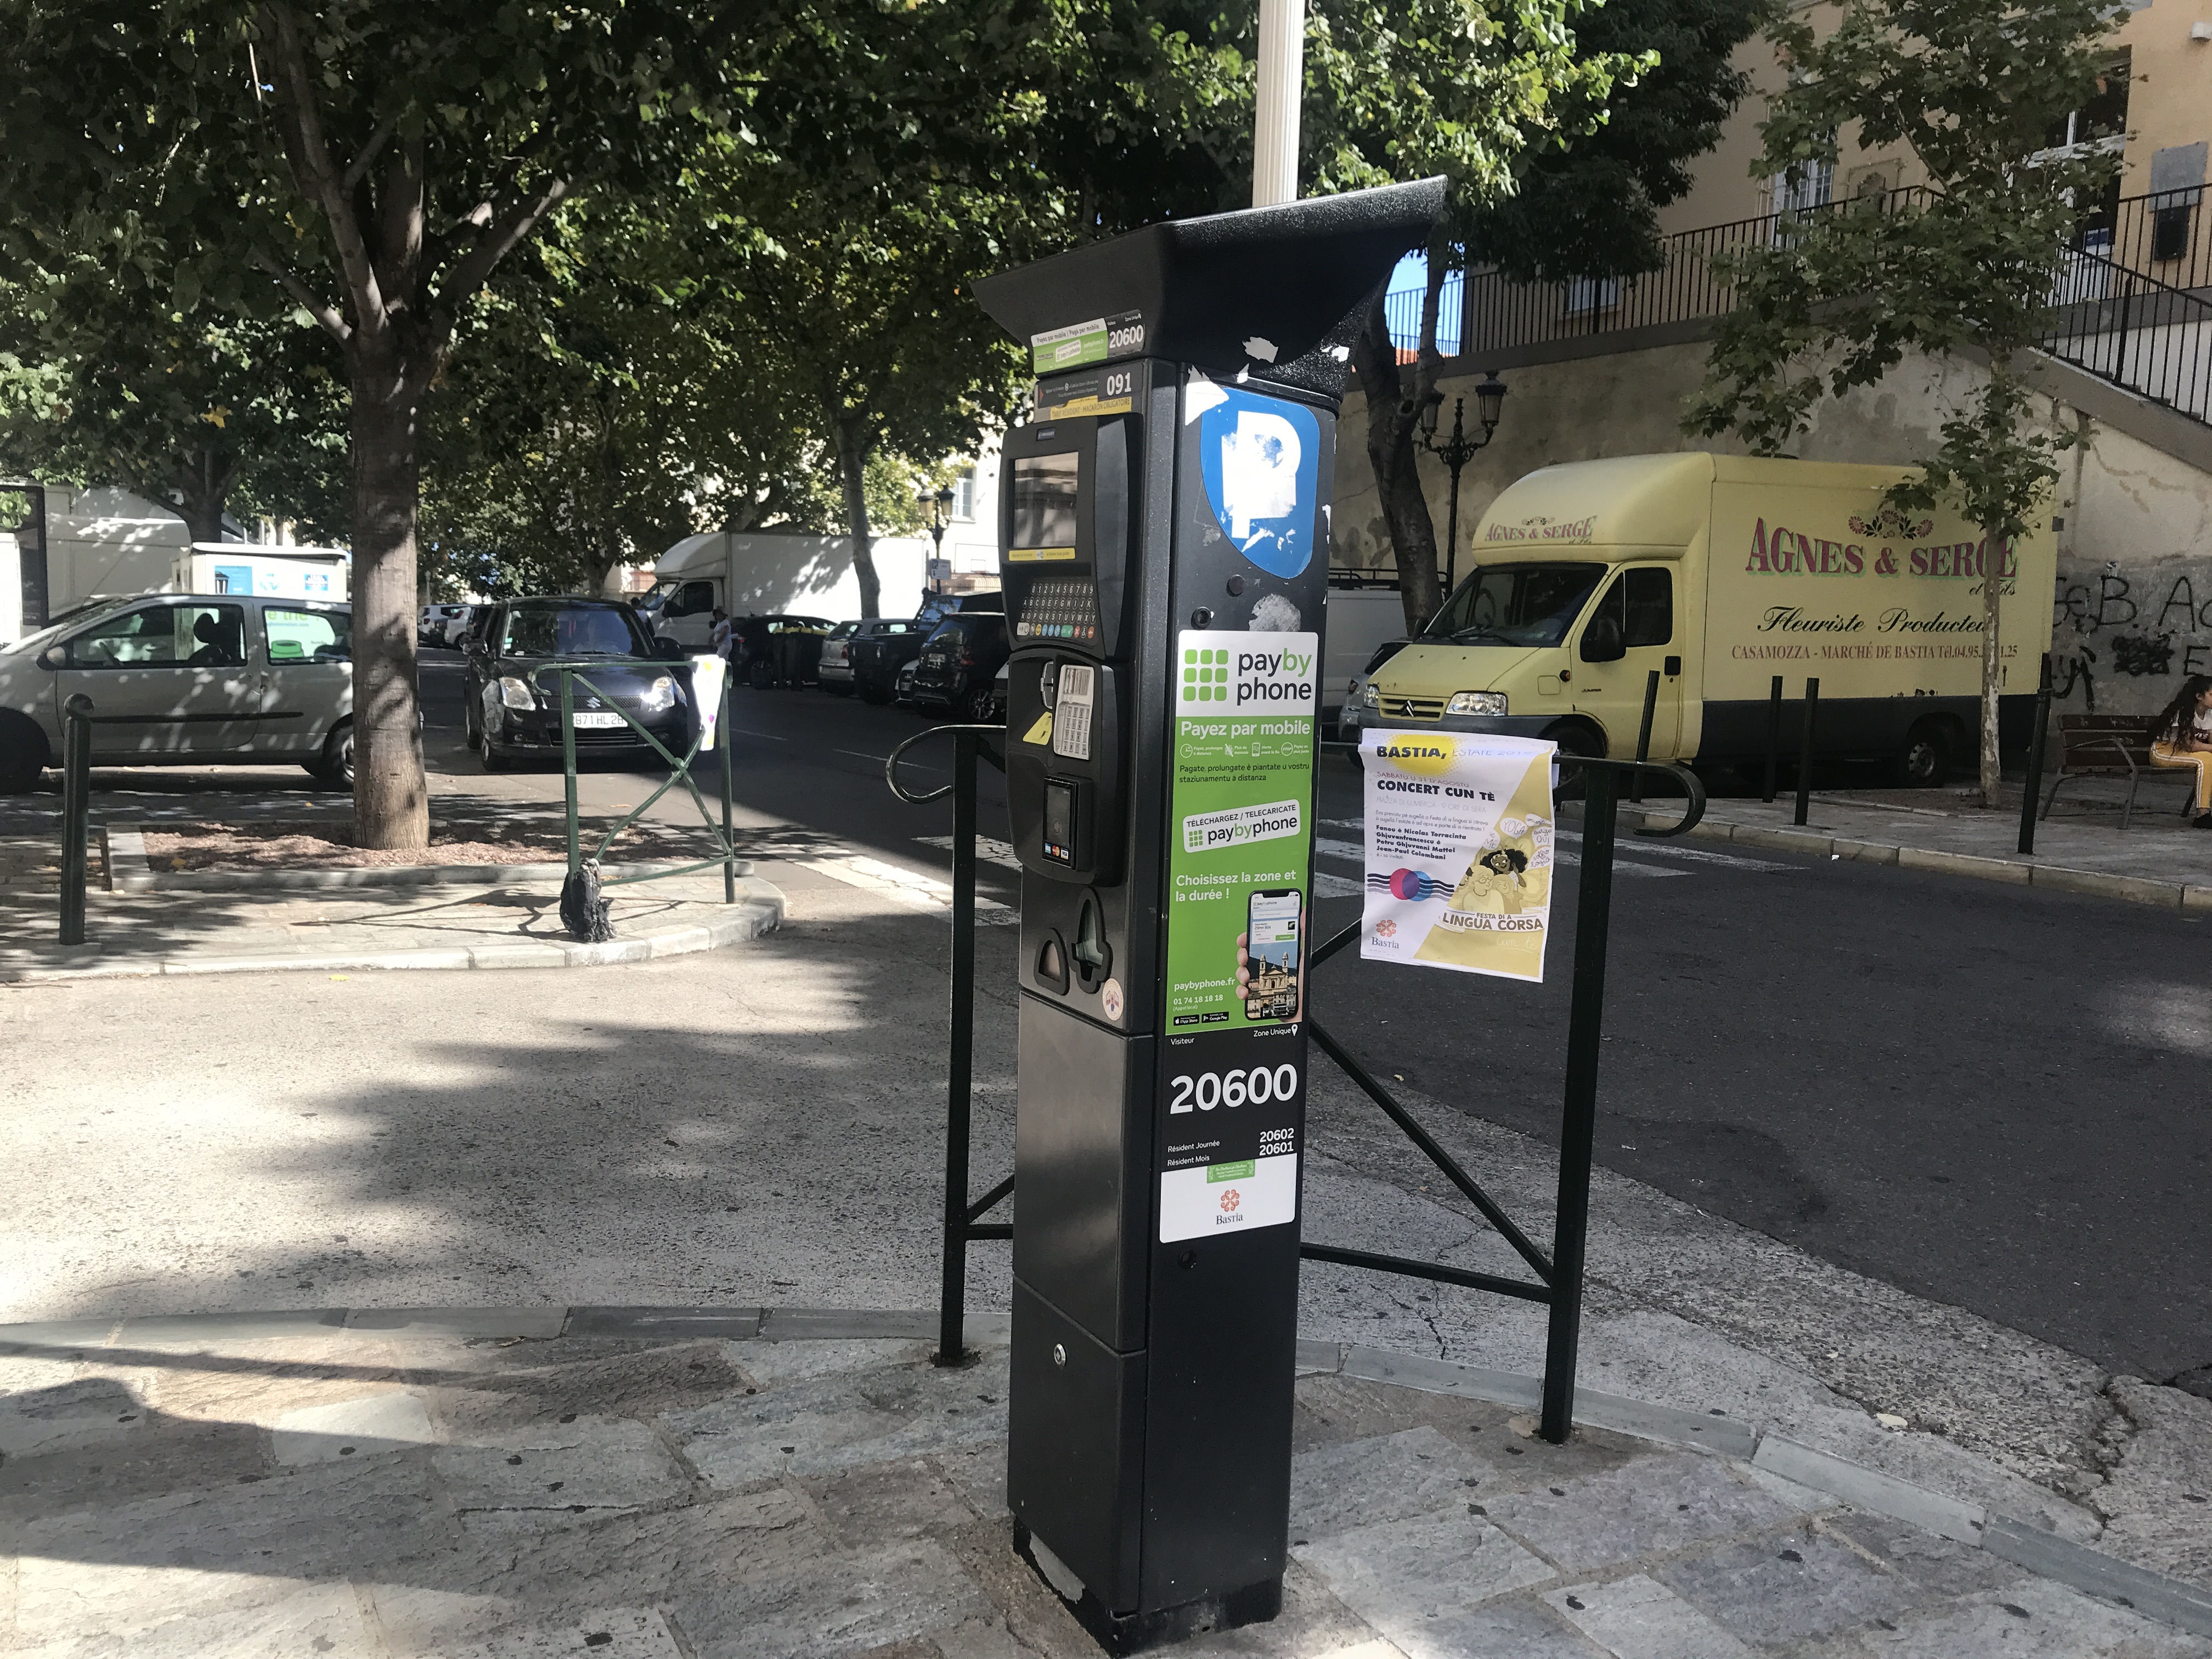 VIDEO - Payer son stationnement sur son smartphone, c'est désormais possible à Bastia